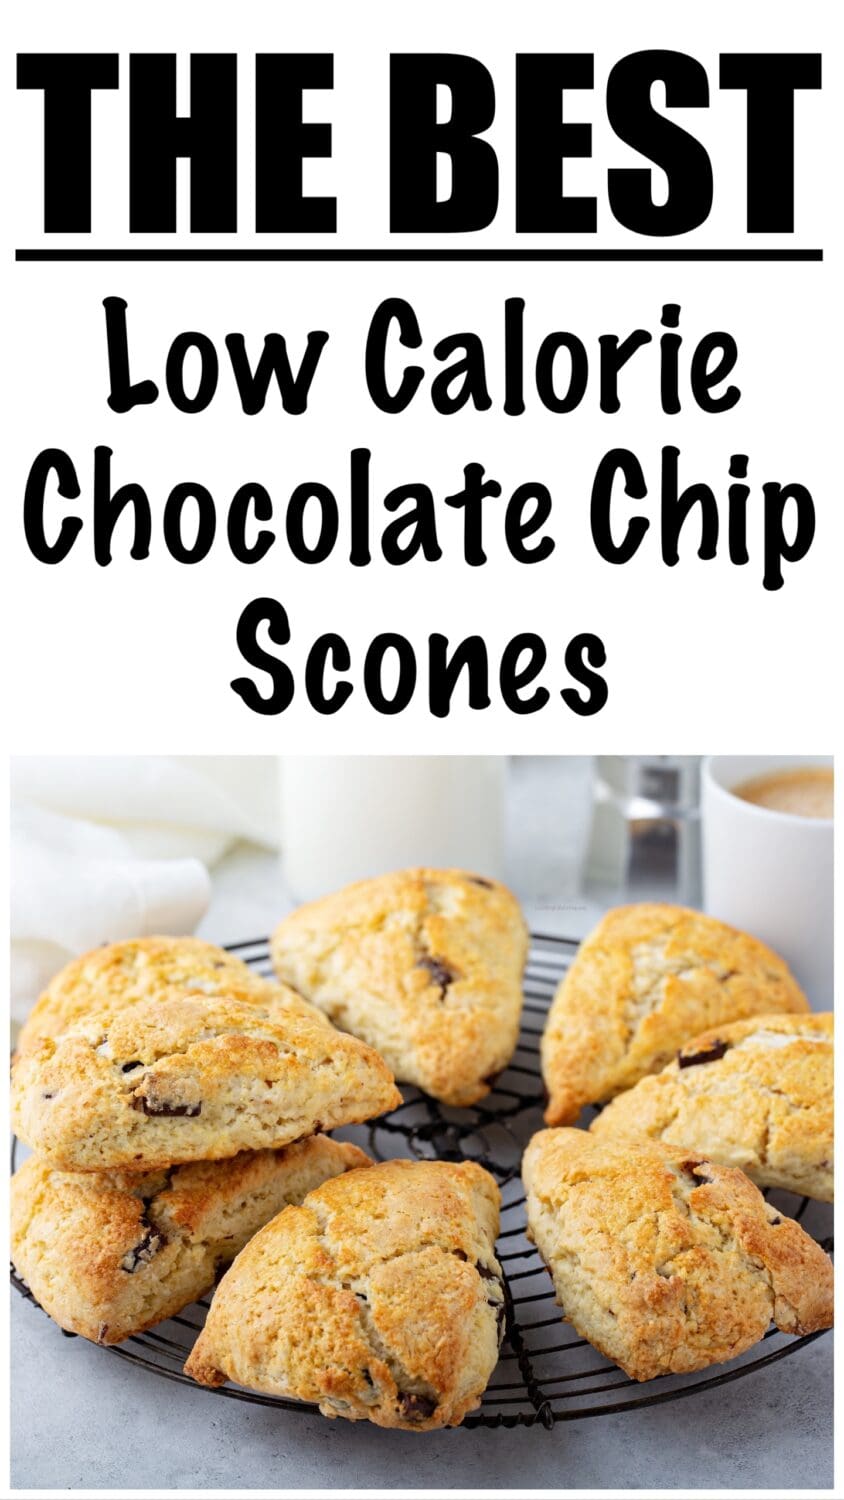 Low Calorie Chocolate Chip Scones Recipe